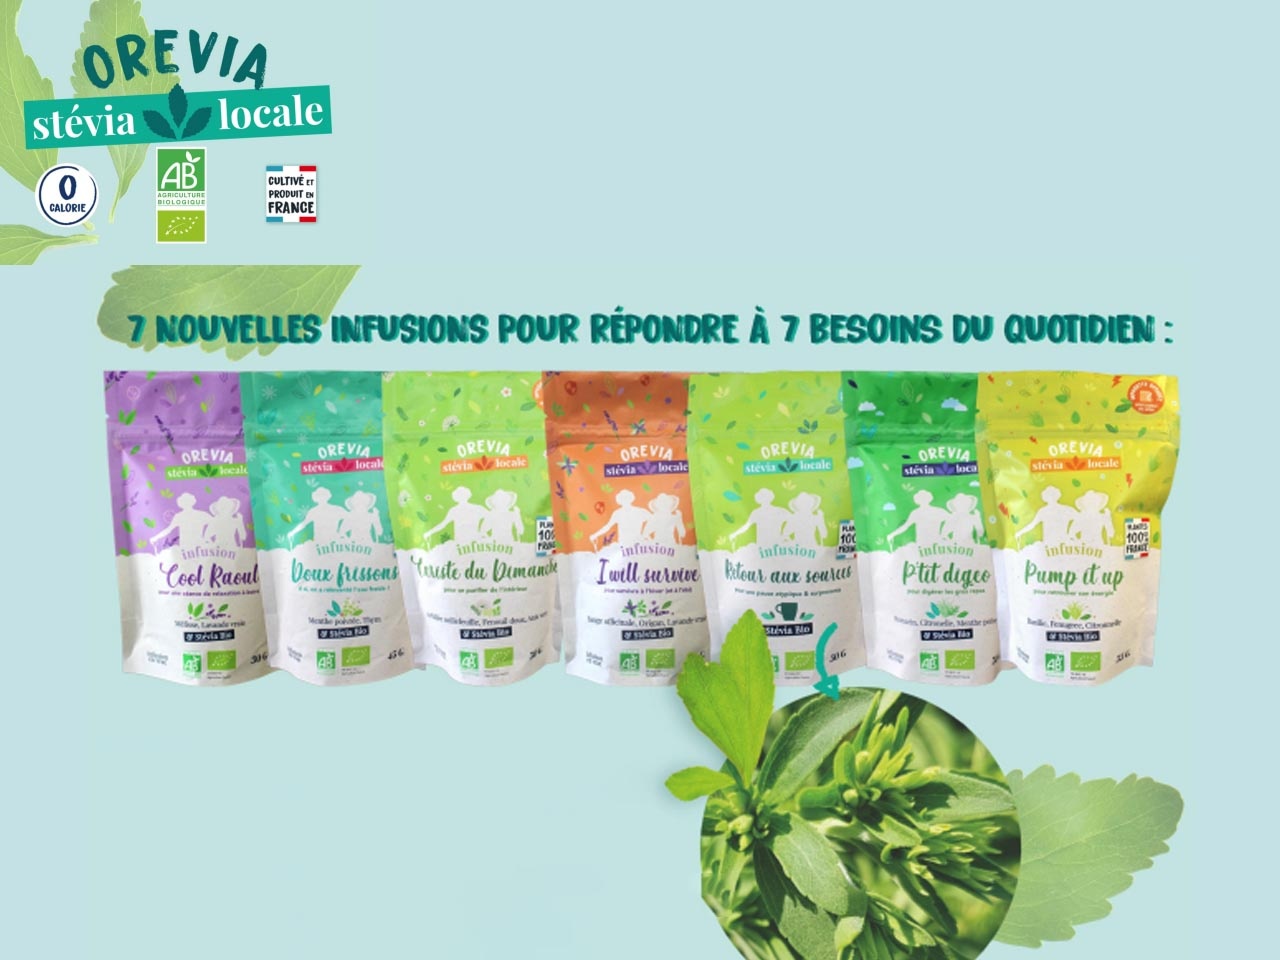 La marque Orevia présente ses nouvelles tisanes locales et bio